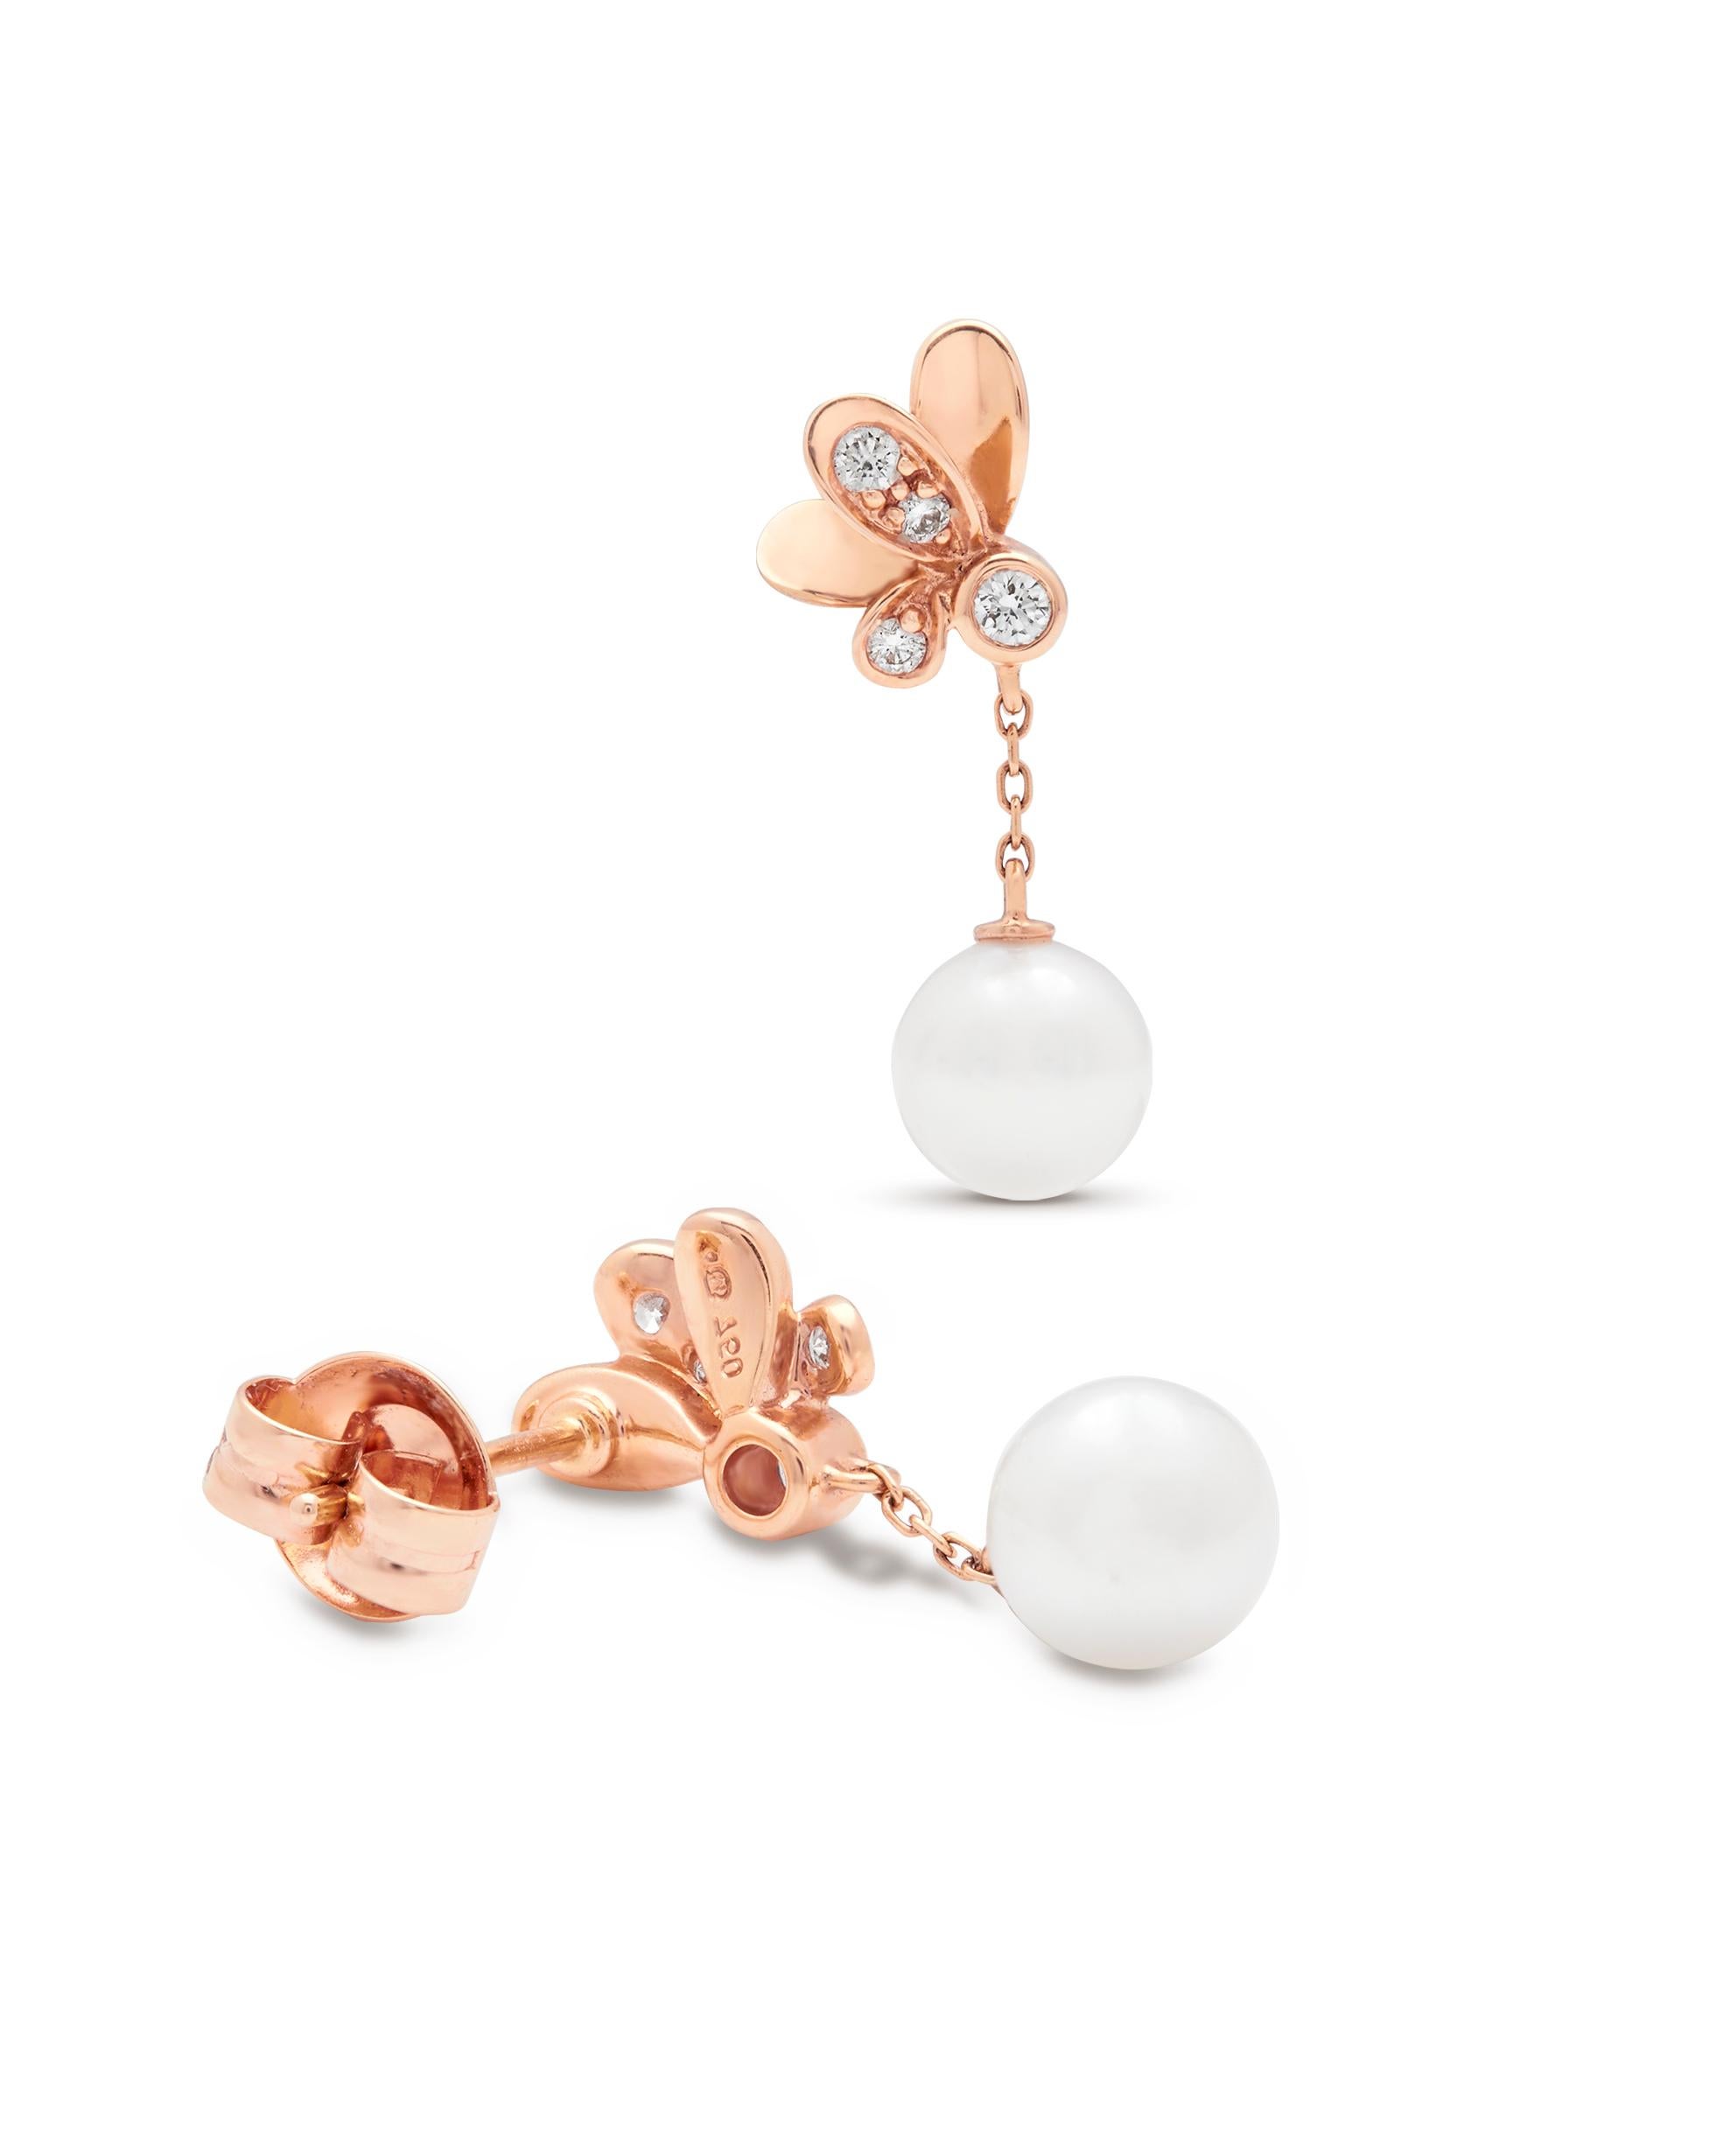 Boucles d'oreilles en or rose 18ct à diamants et perles Mikimoto Dandelion, 

Il y a plus d'un siècle, Kokichi Mikimoto a réussi à créer la première perle de culture au monde. Sa quête de la perfection et son amour pour ces pierres précieuses pures